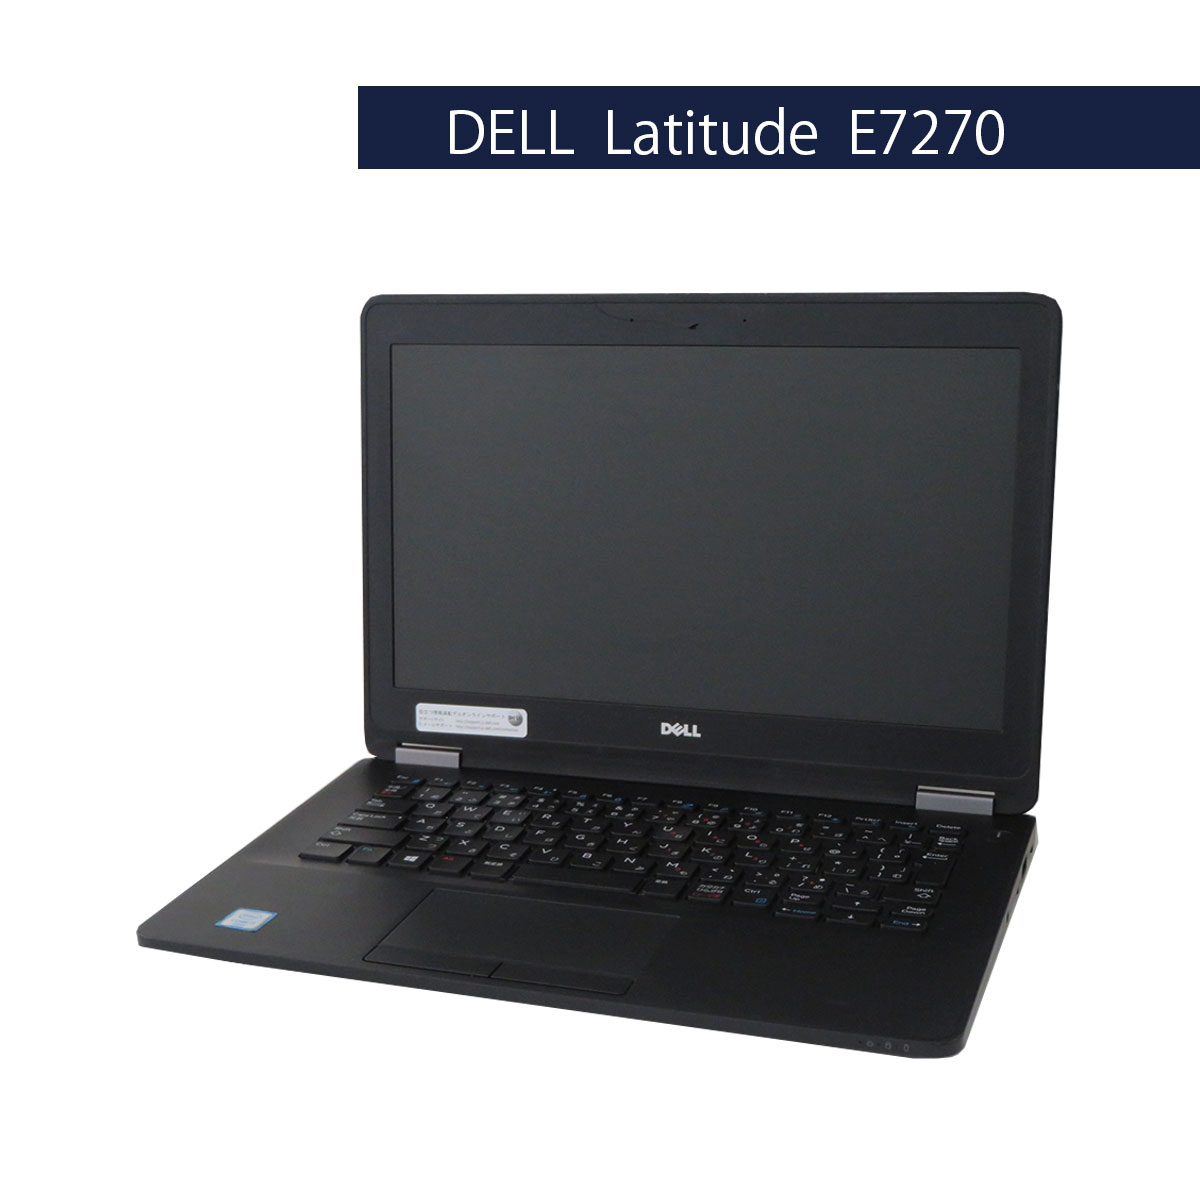 DELL Latitude E7270 Core i3 6100U Windows10 Pro 64Bit